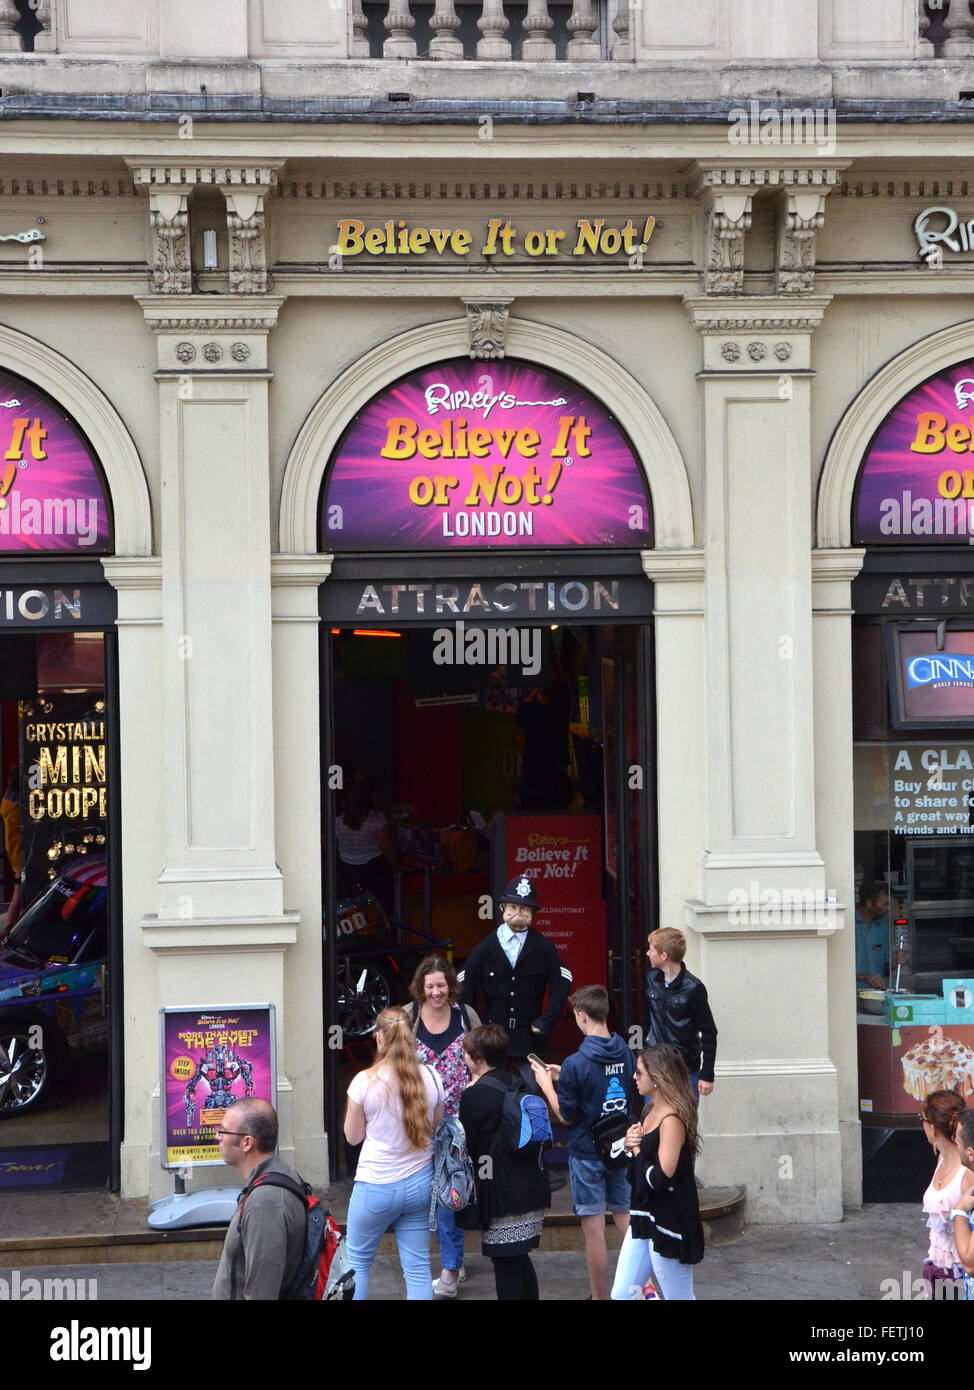 Londres - 6 août : Ripley's croyez Ir ou pas ! Londres, montré le 6 août 2015, comprend plus de 700 artefacts. Banque D'Images